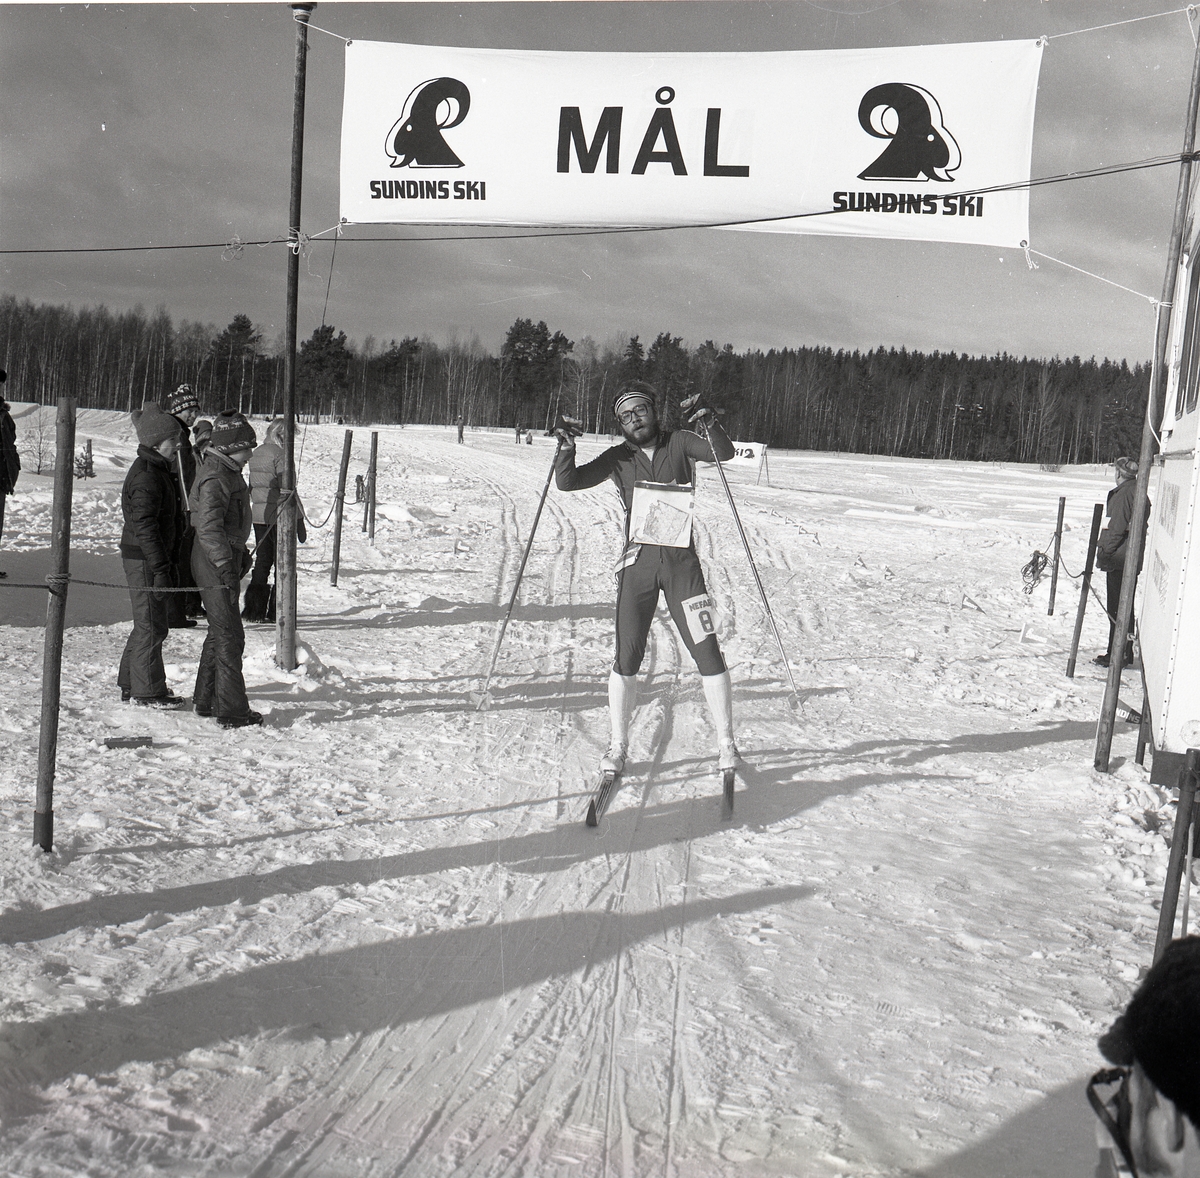 En skidåkare går i mål efter ett lopp i skidorintering.